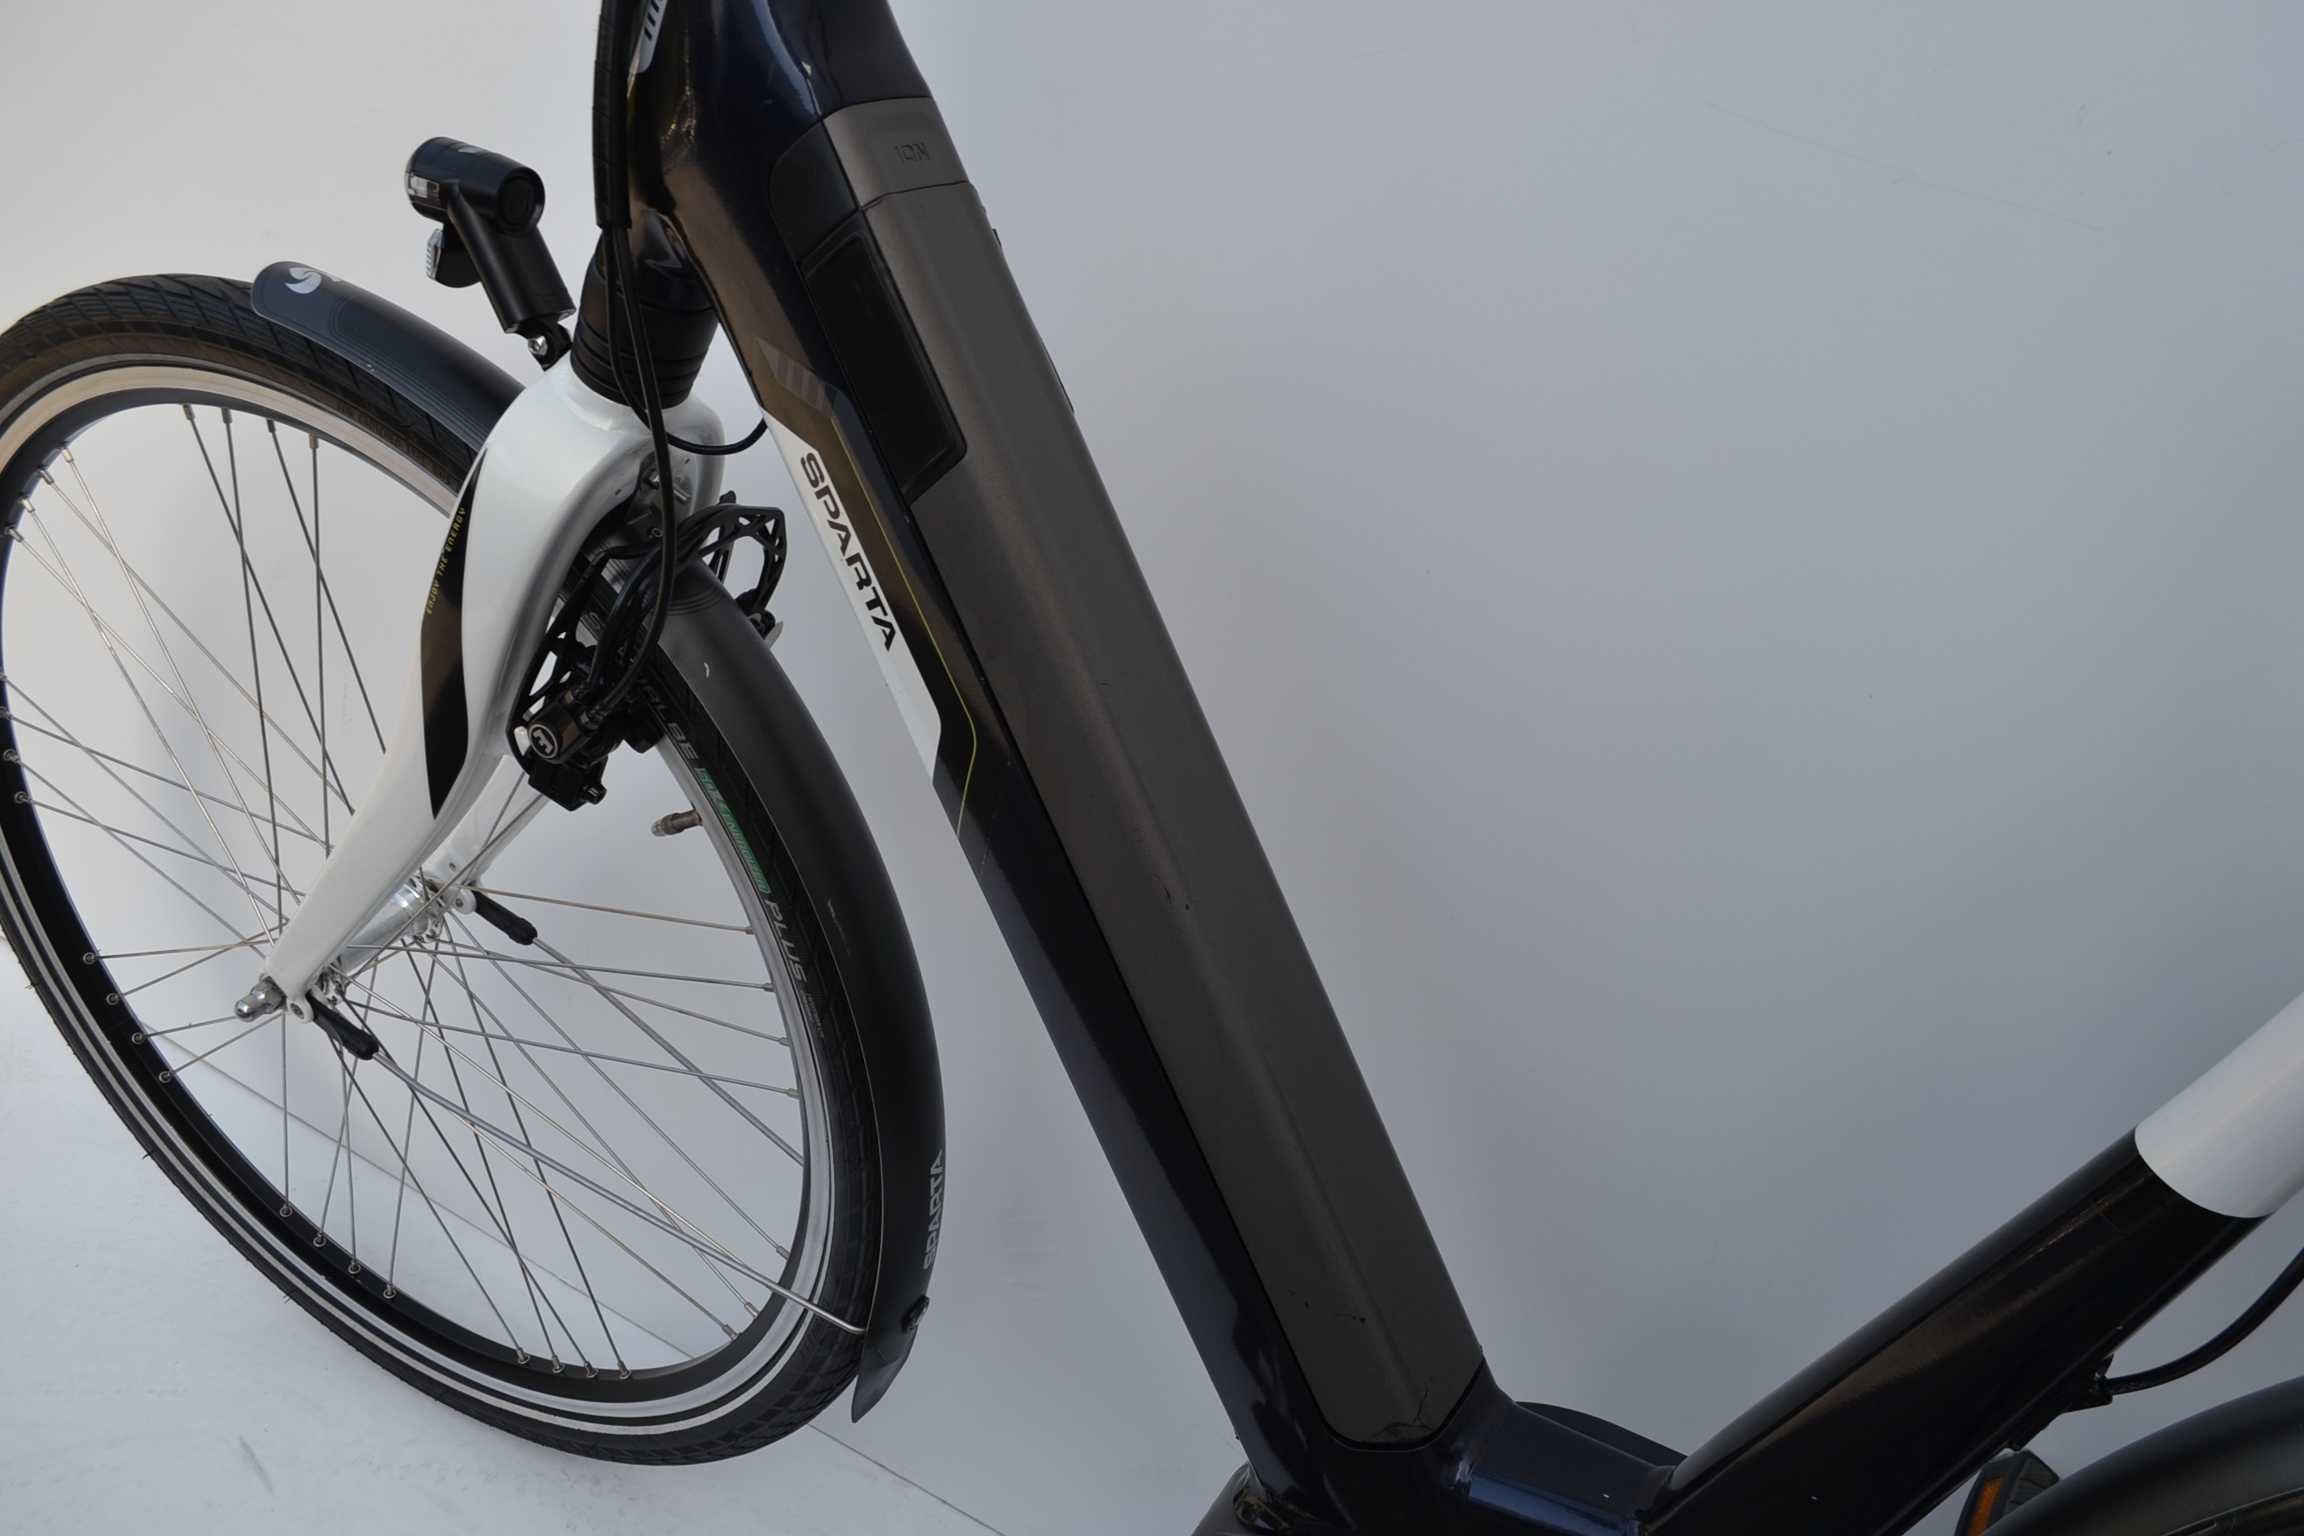 Sparta ION 53cm * rower elektryczny ze wspomaganiem * bateria w ramie